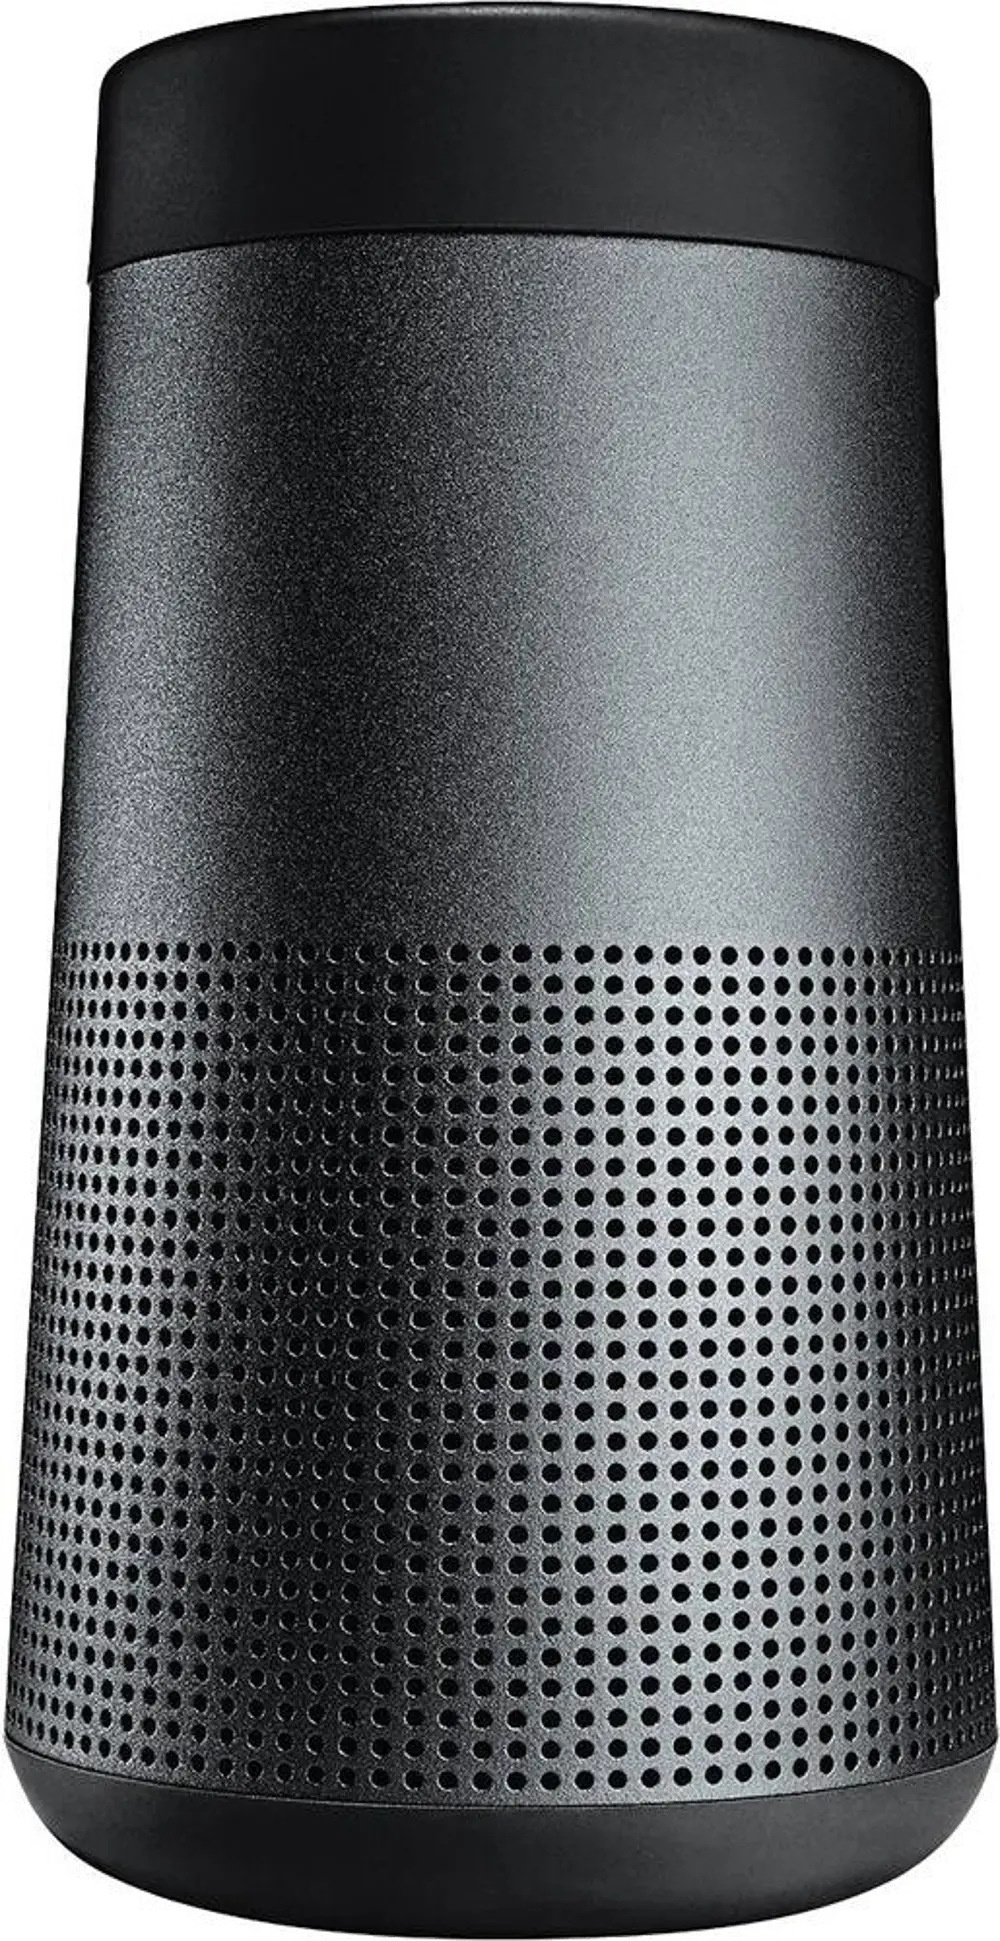 SNDLNK-REVOLVE,BLK Bose SoundLink Revolve Bluetooth Speaker - Black-1